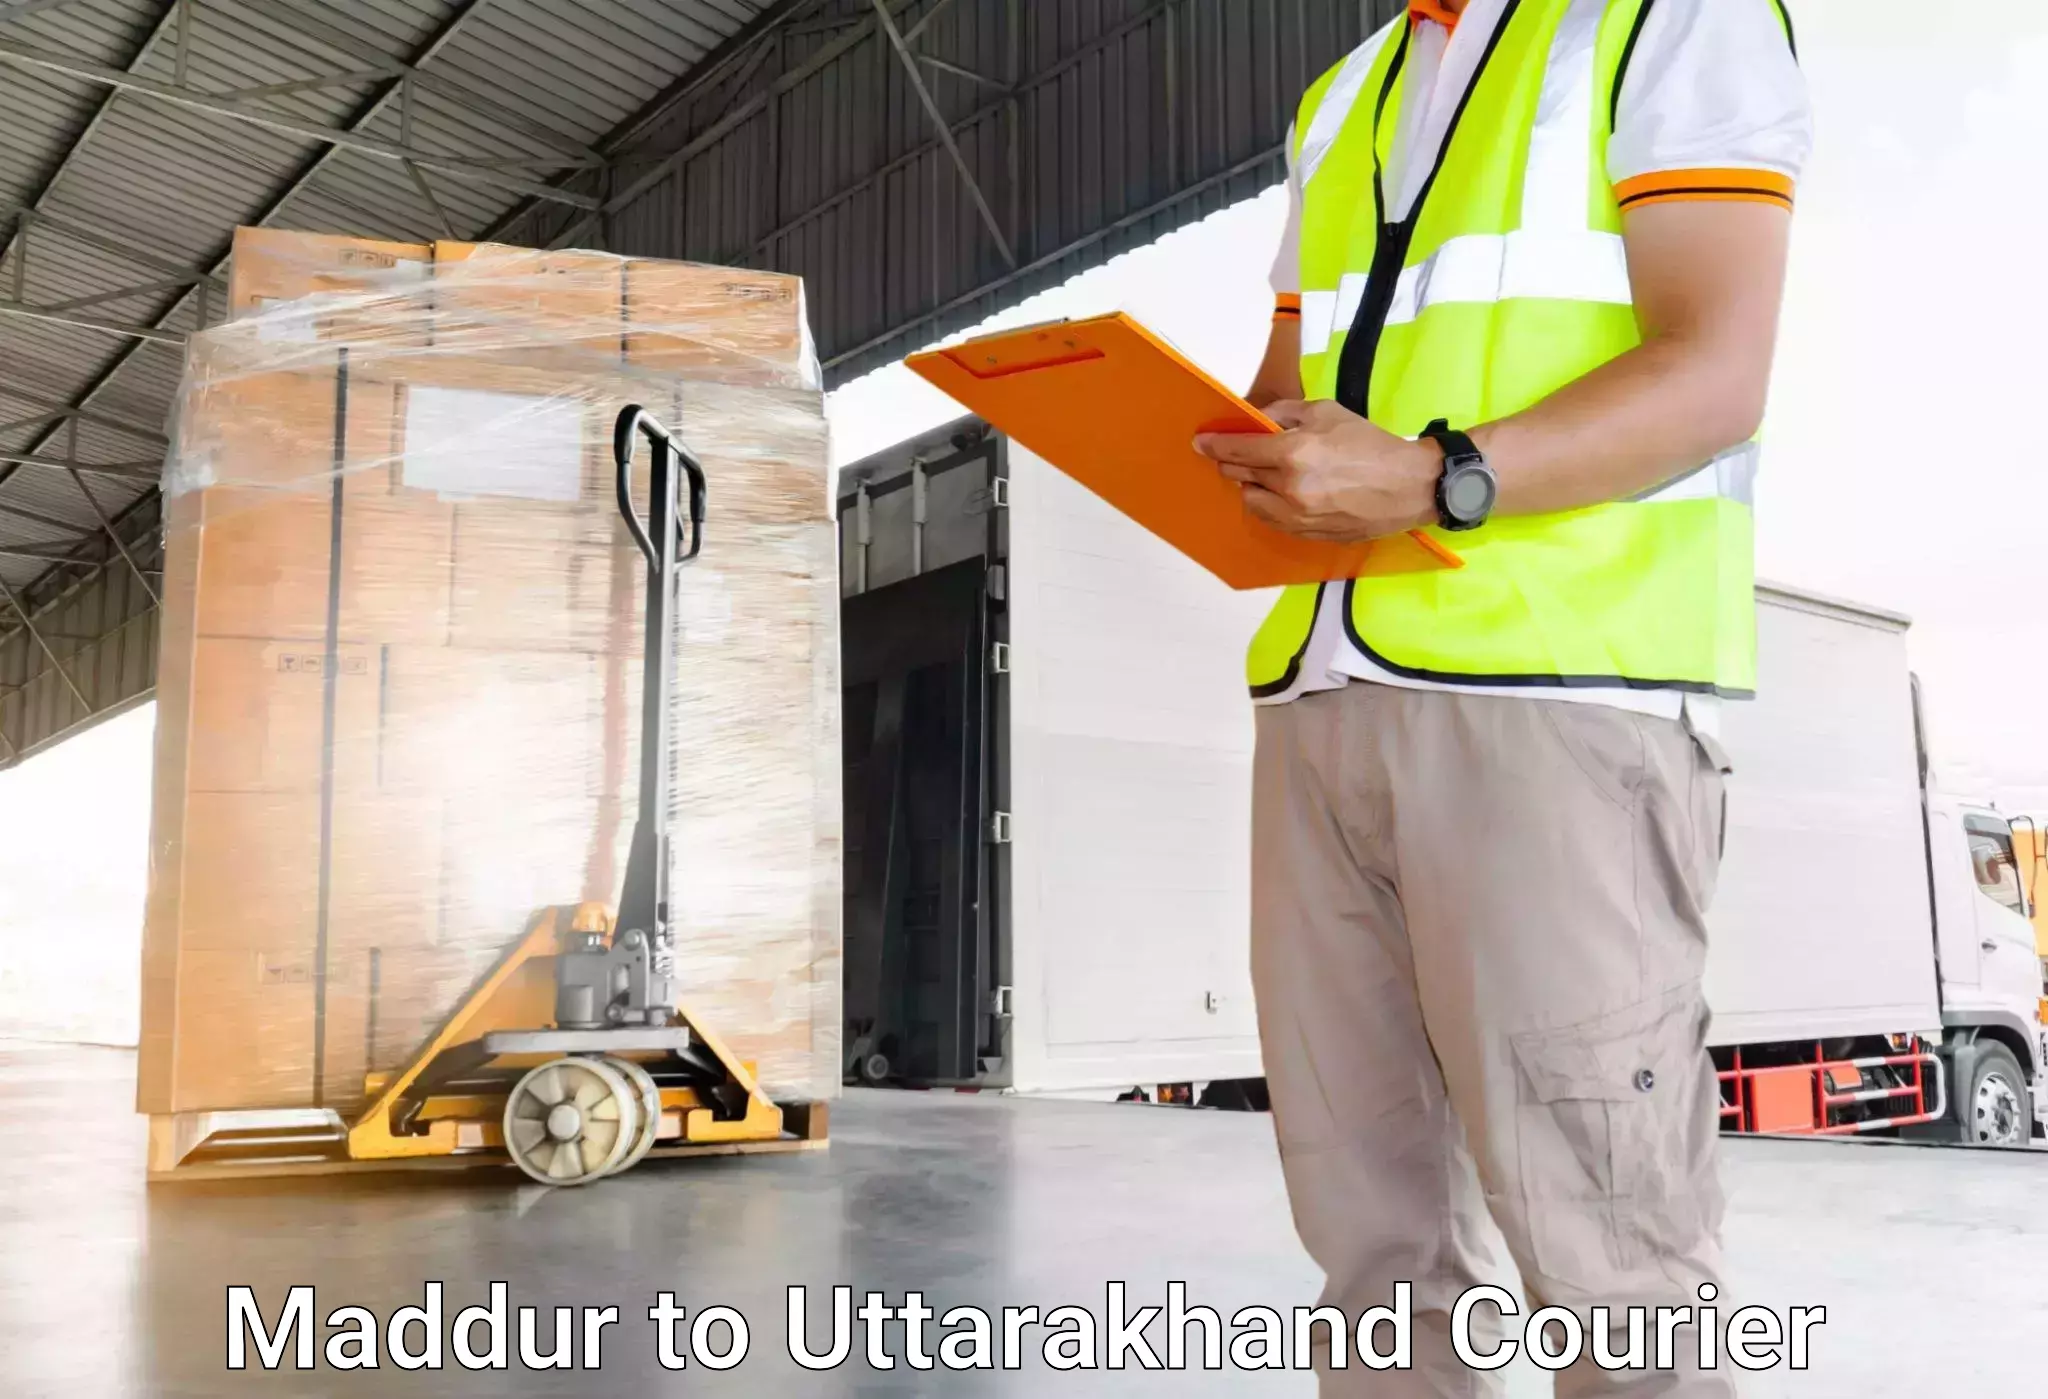 Luggage shipment processing Maddur to Uttarakhand